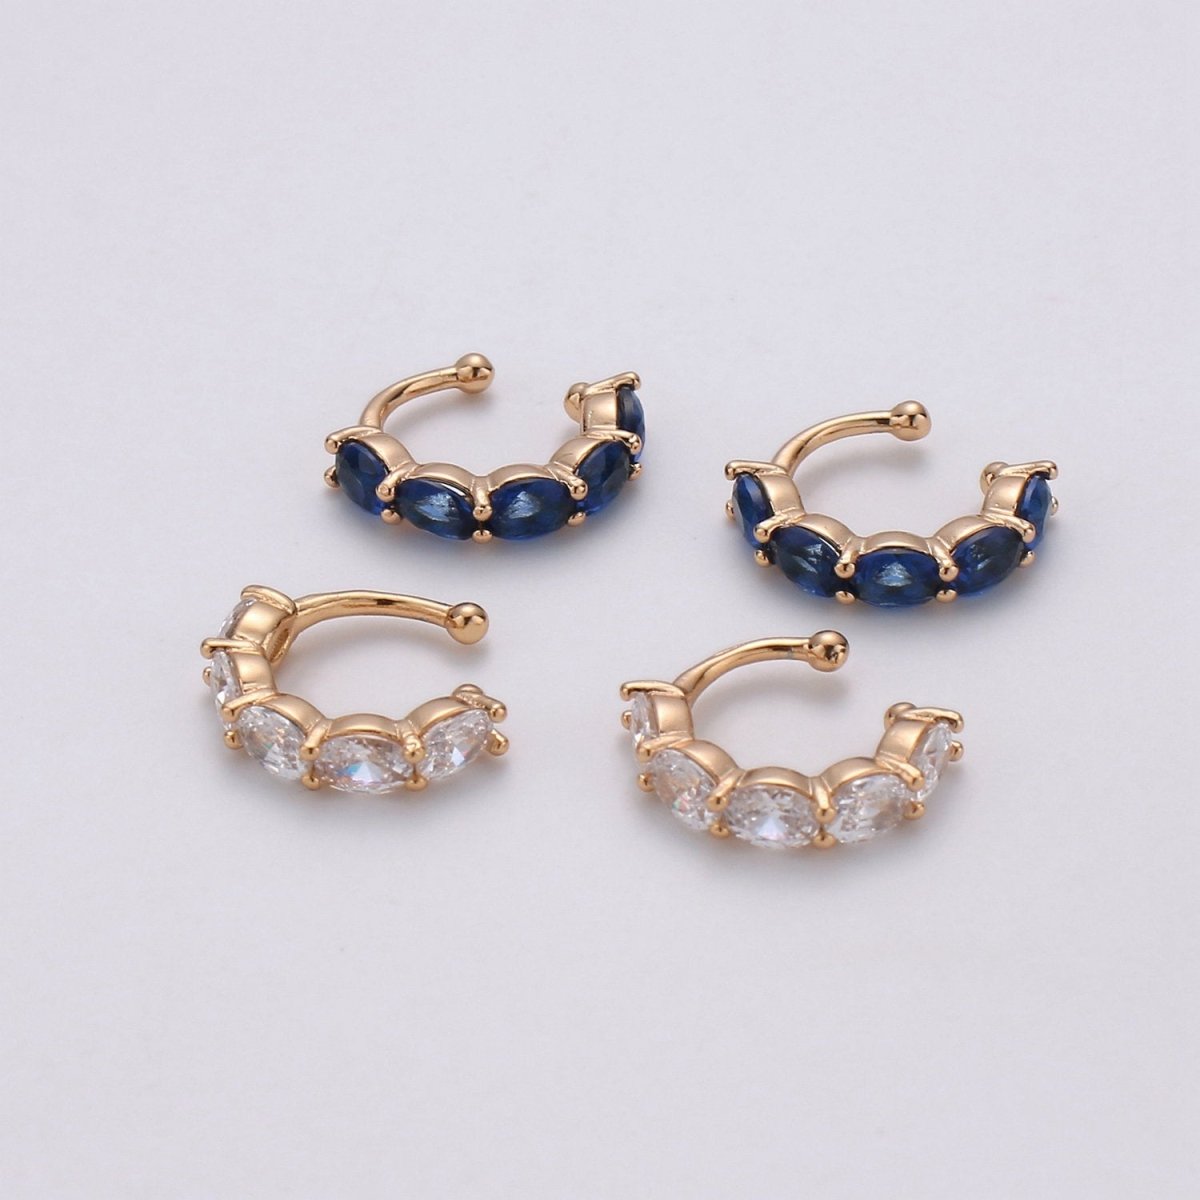 Ear cuff no piercing Gold, Blue Clear ear cuff cz, dainty cuff, gold ear cuff minimalist jewelry K-758 conch cuff cartilage cuff K-758 - DLUXCA